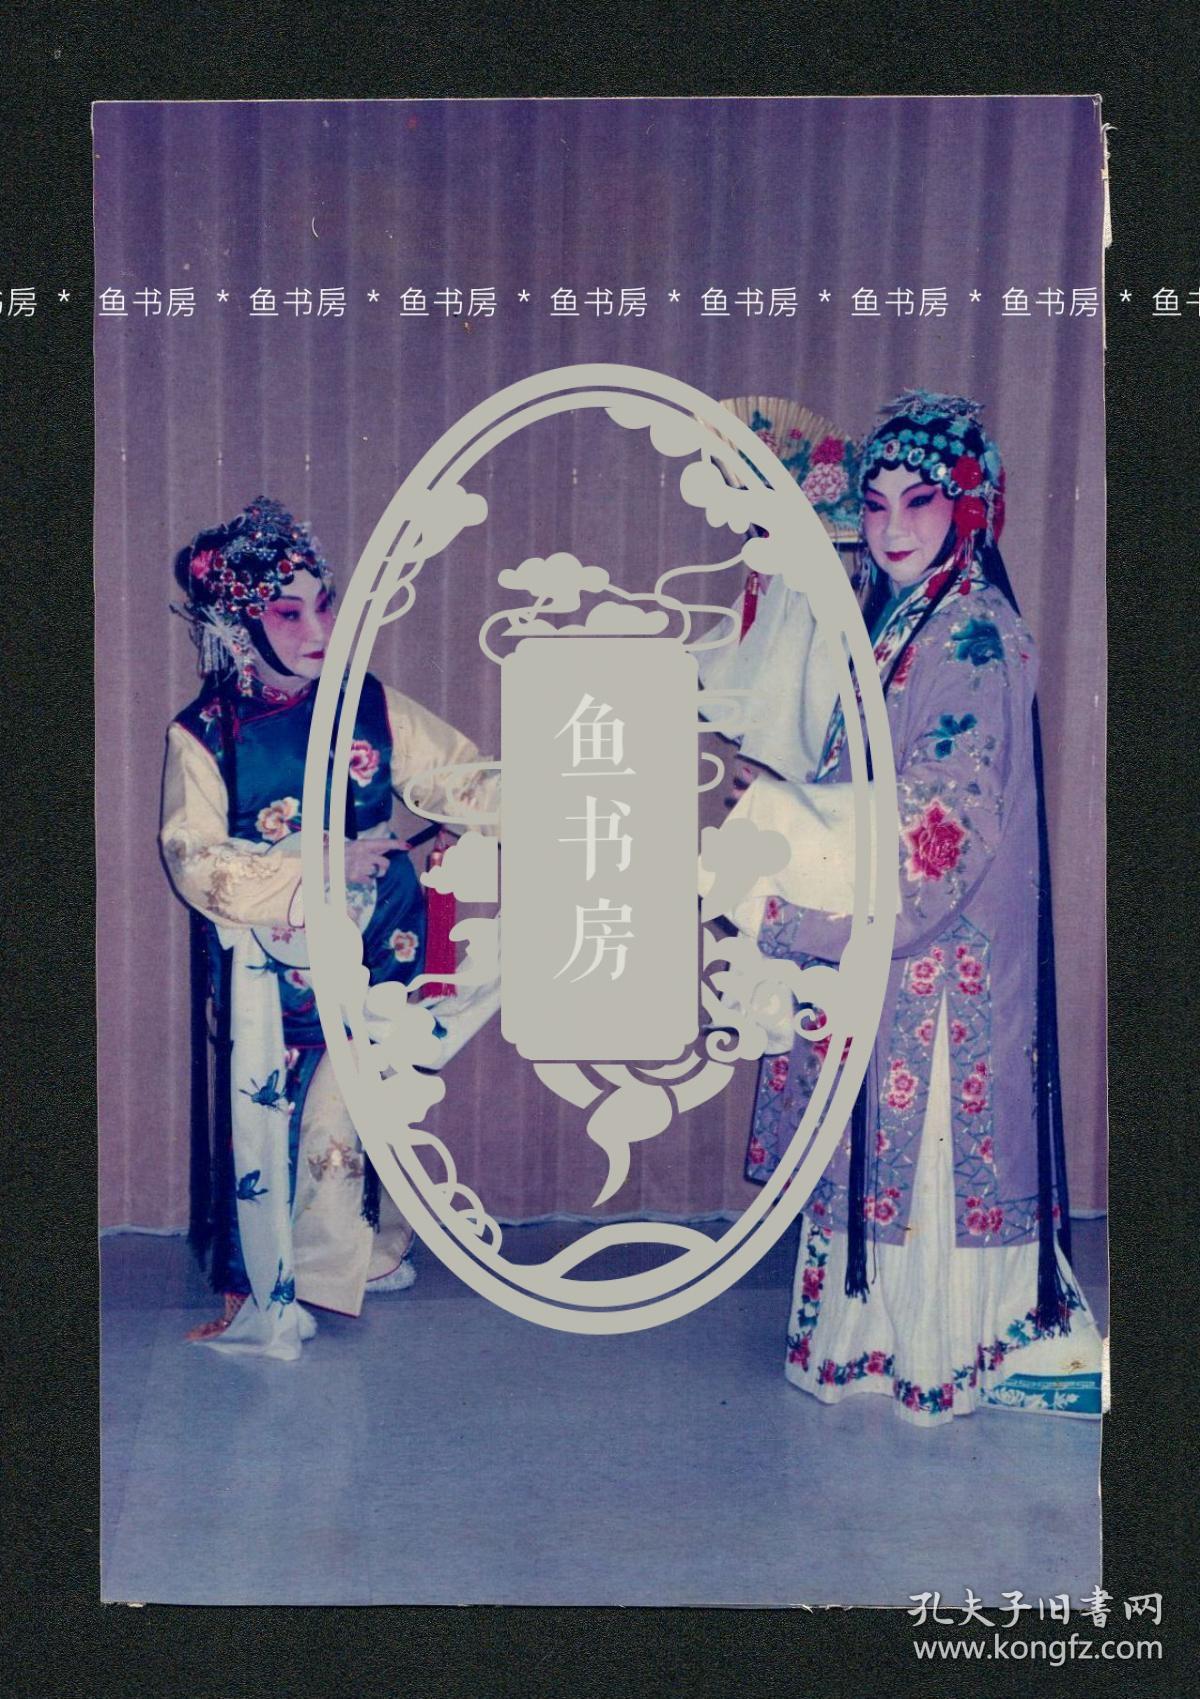 “合肥四姊妹”之一 张元和签名照片，1993年昆剧《游园》剧照，张元和亲笔签名并题注 ，重要昆曲影像文献，罕见